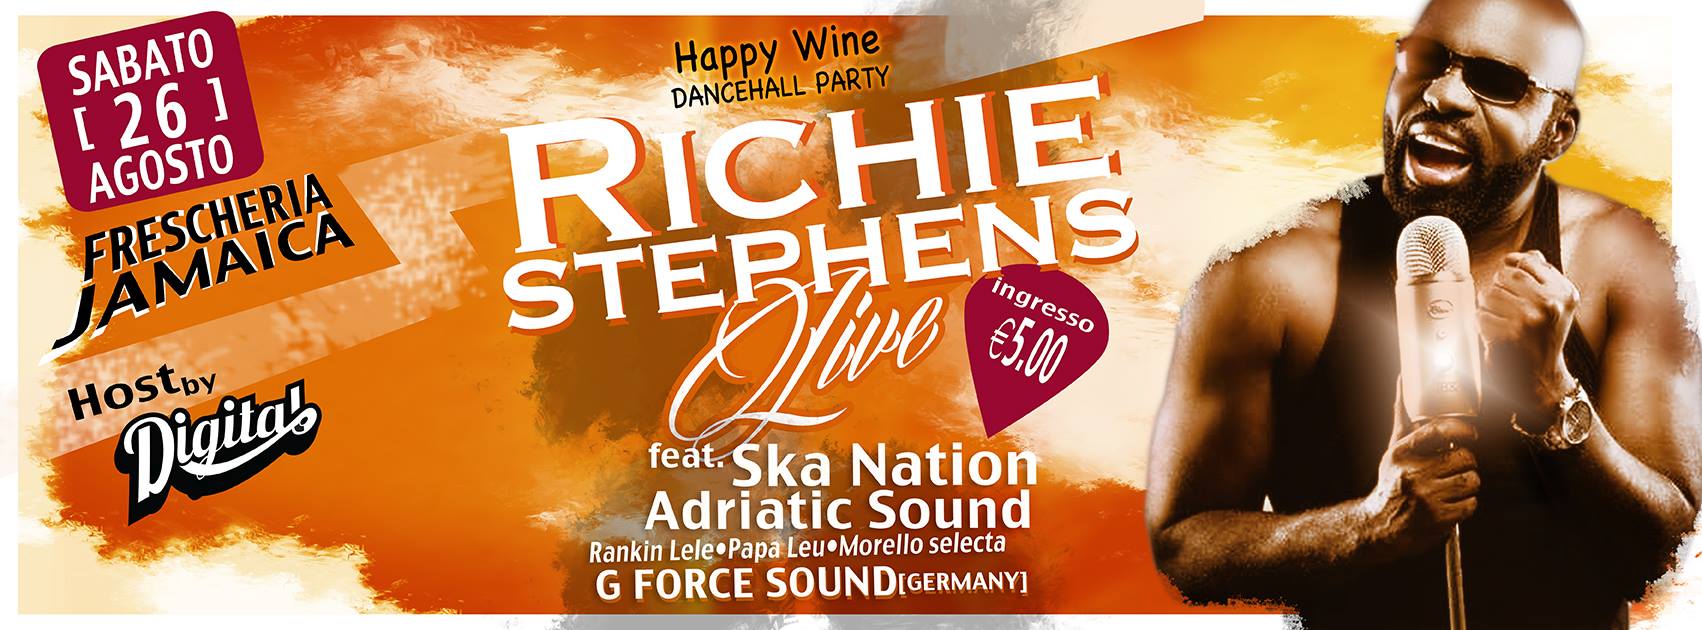 Richie Stephens live showcase+Adriatic Sound e G force @Frescheria Jamaica